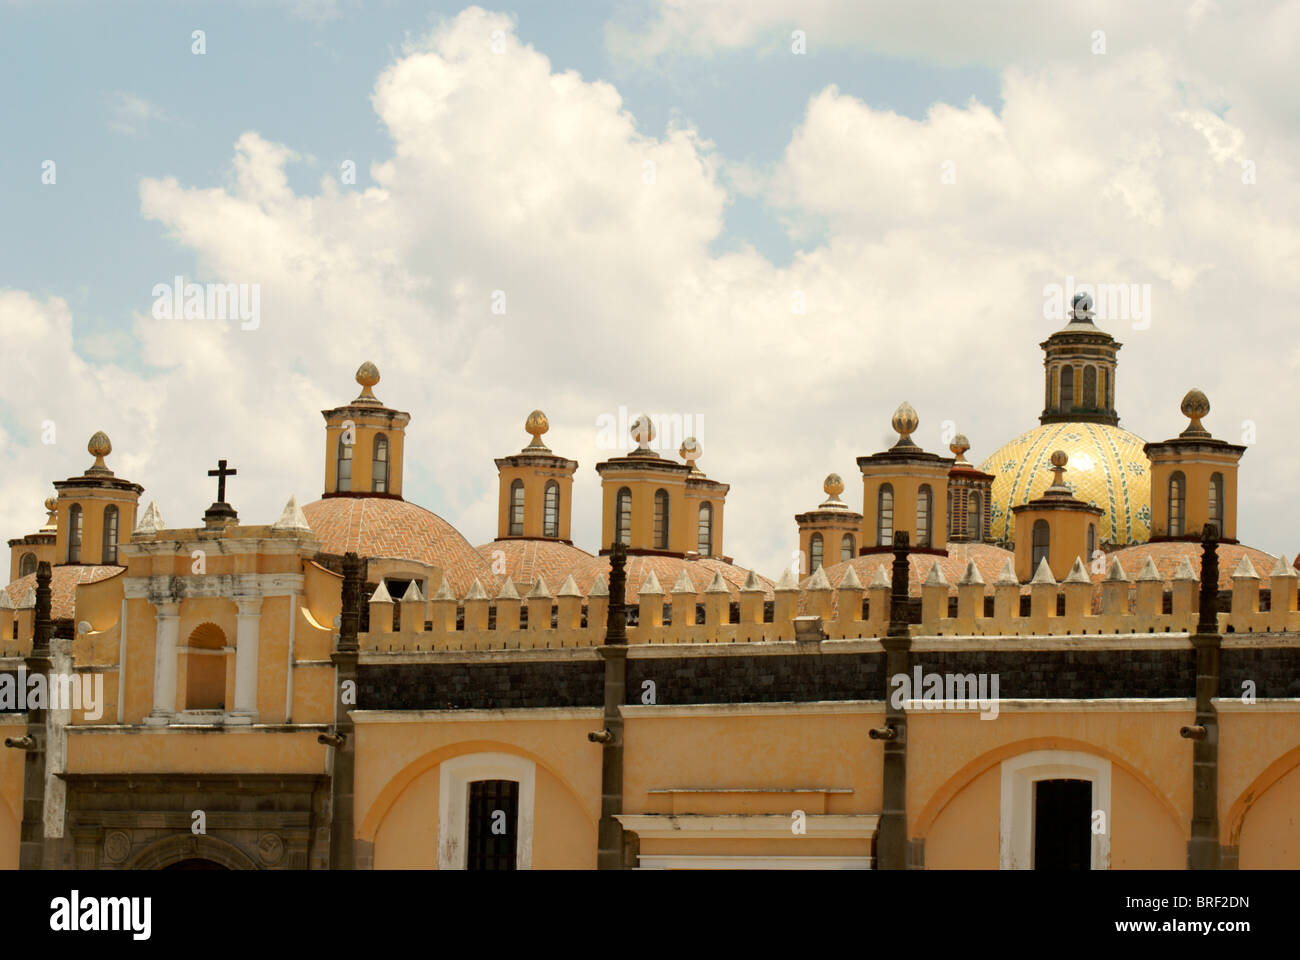 Le 16e siècle Capilla Real, Ex-Convento de San Gabriel, Cholula, Puebla, Mexique. Cholula est un UNESCO World Heritage Site. Banque D'Images